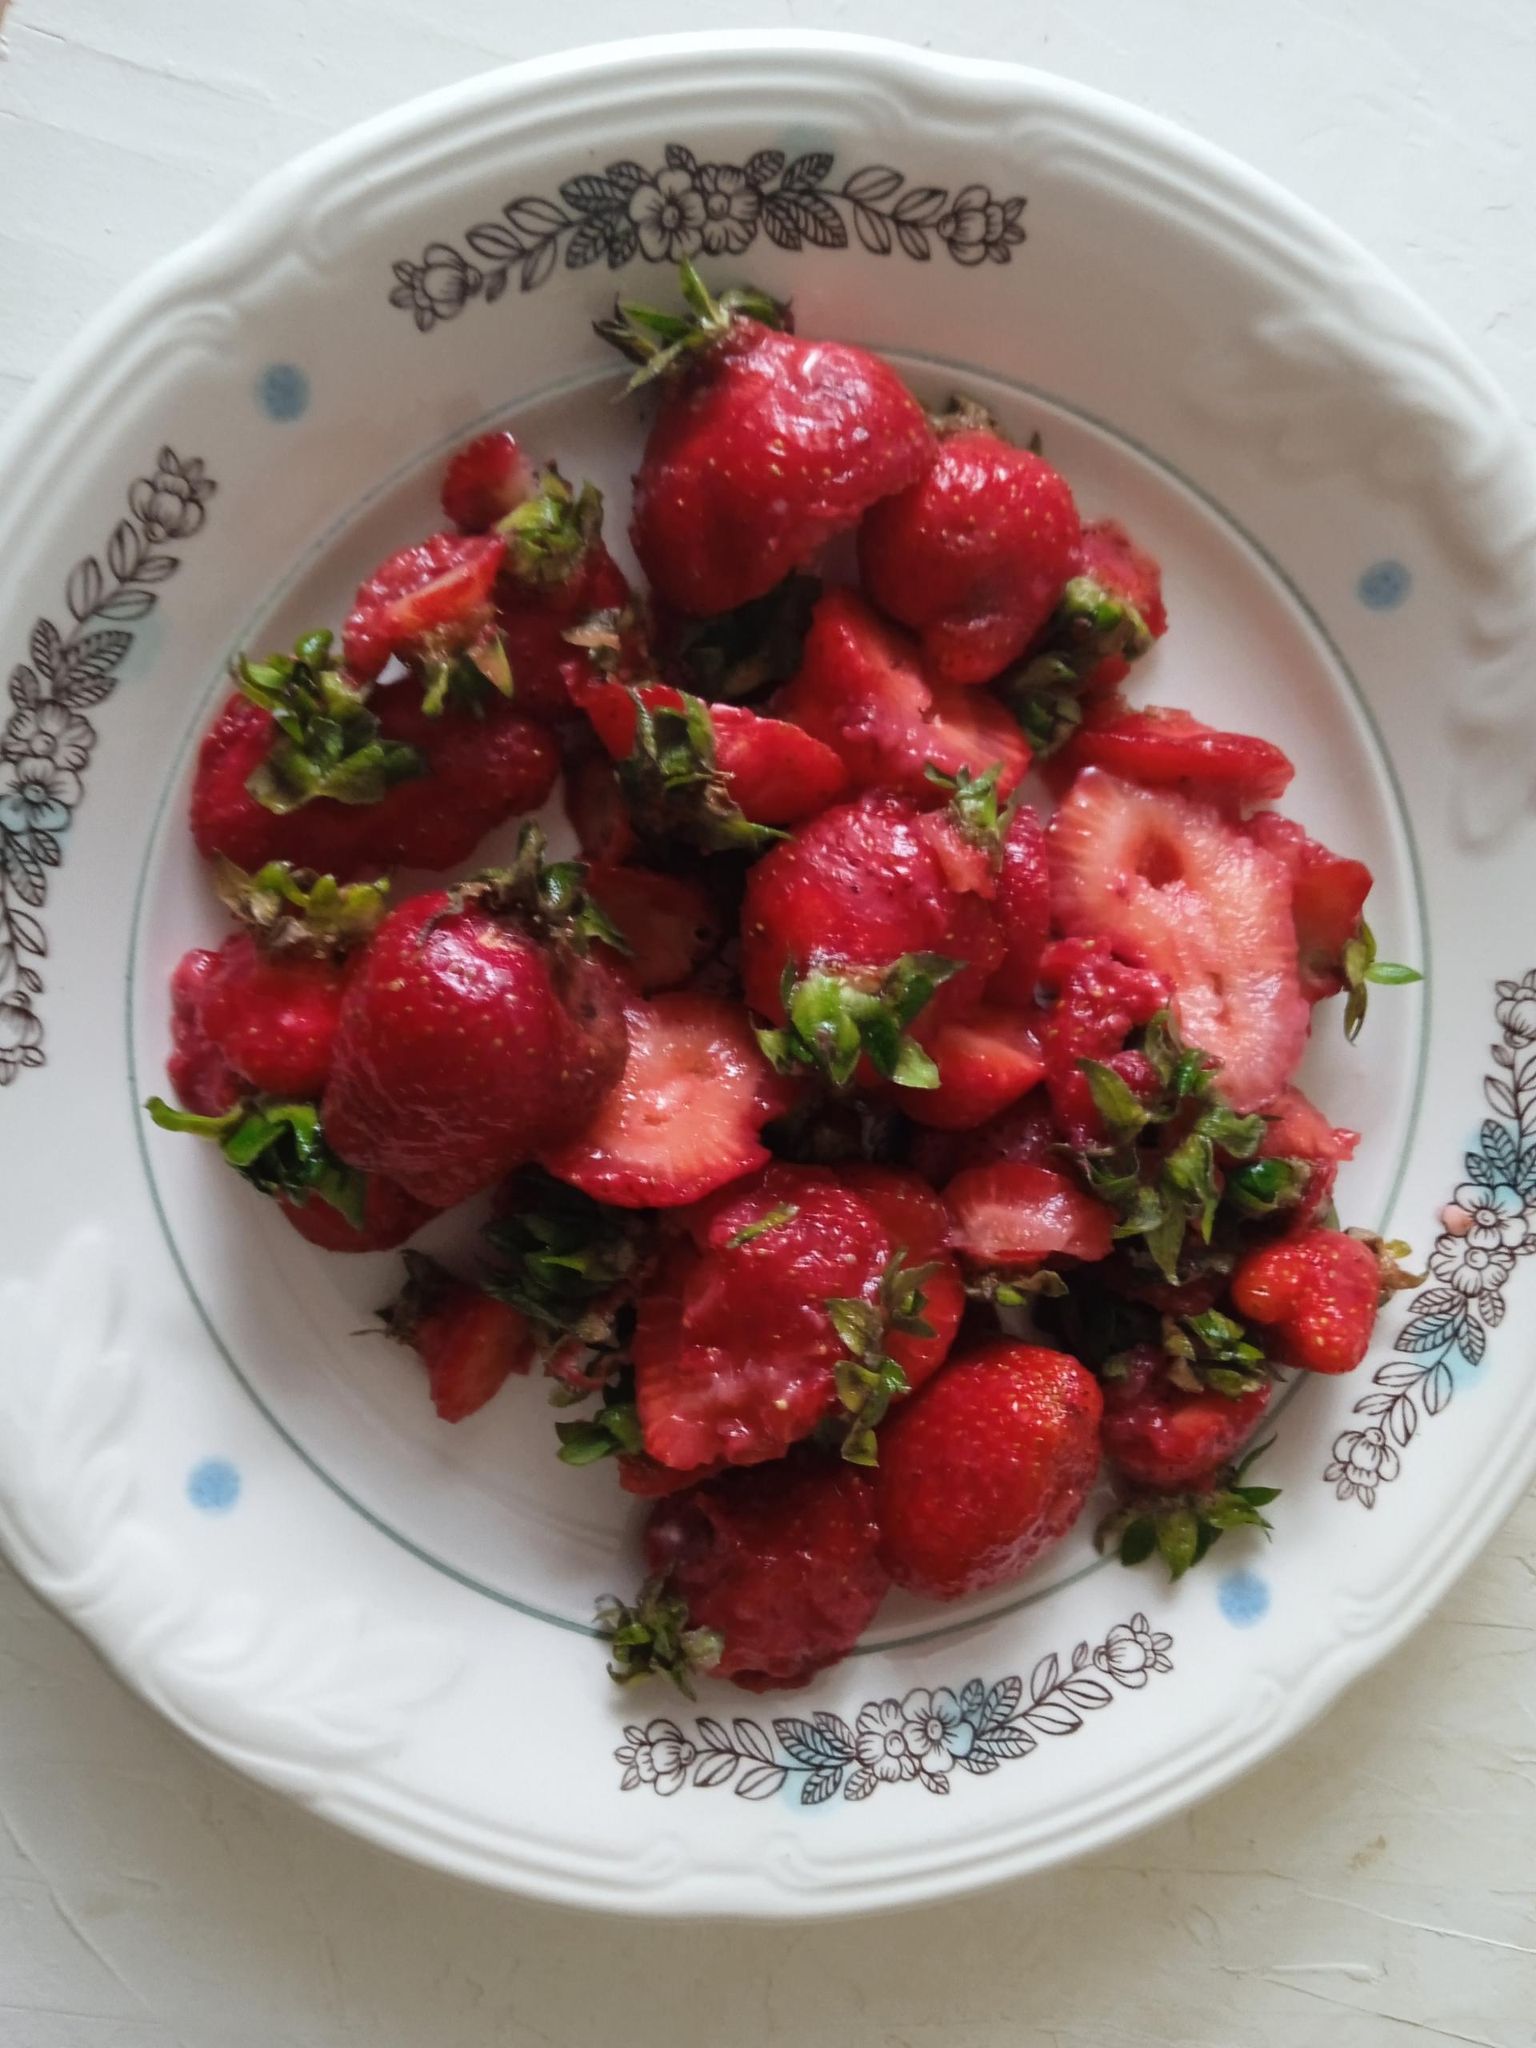 Ostukohast 150 kilomeetri kaugusel tegutseva maasikatalu ühest marjakilost kogunes taldrikutäis pehmeid marju. Riina Martinson